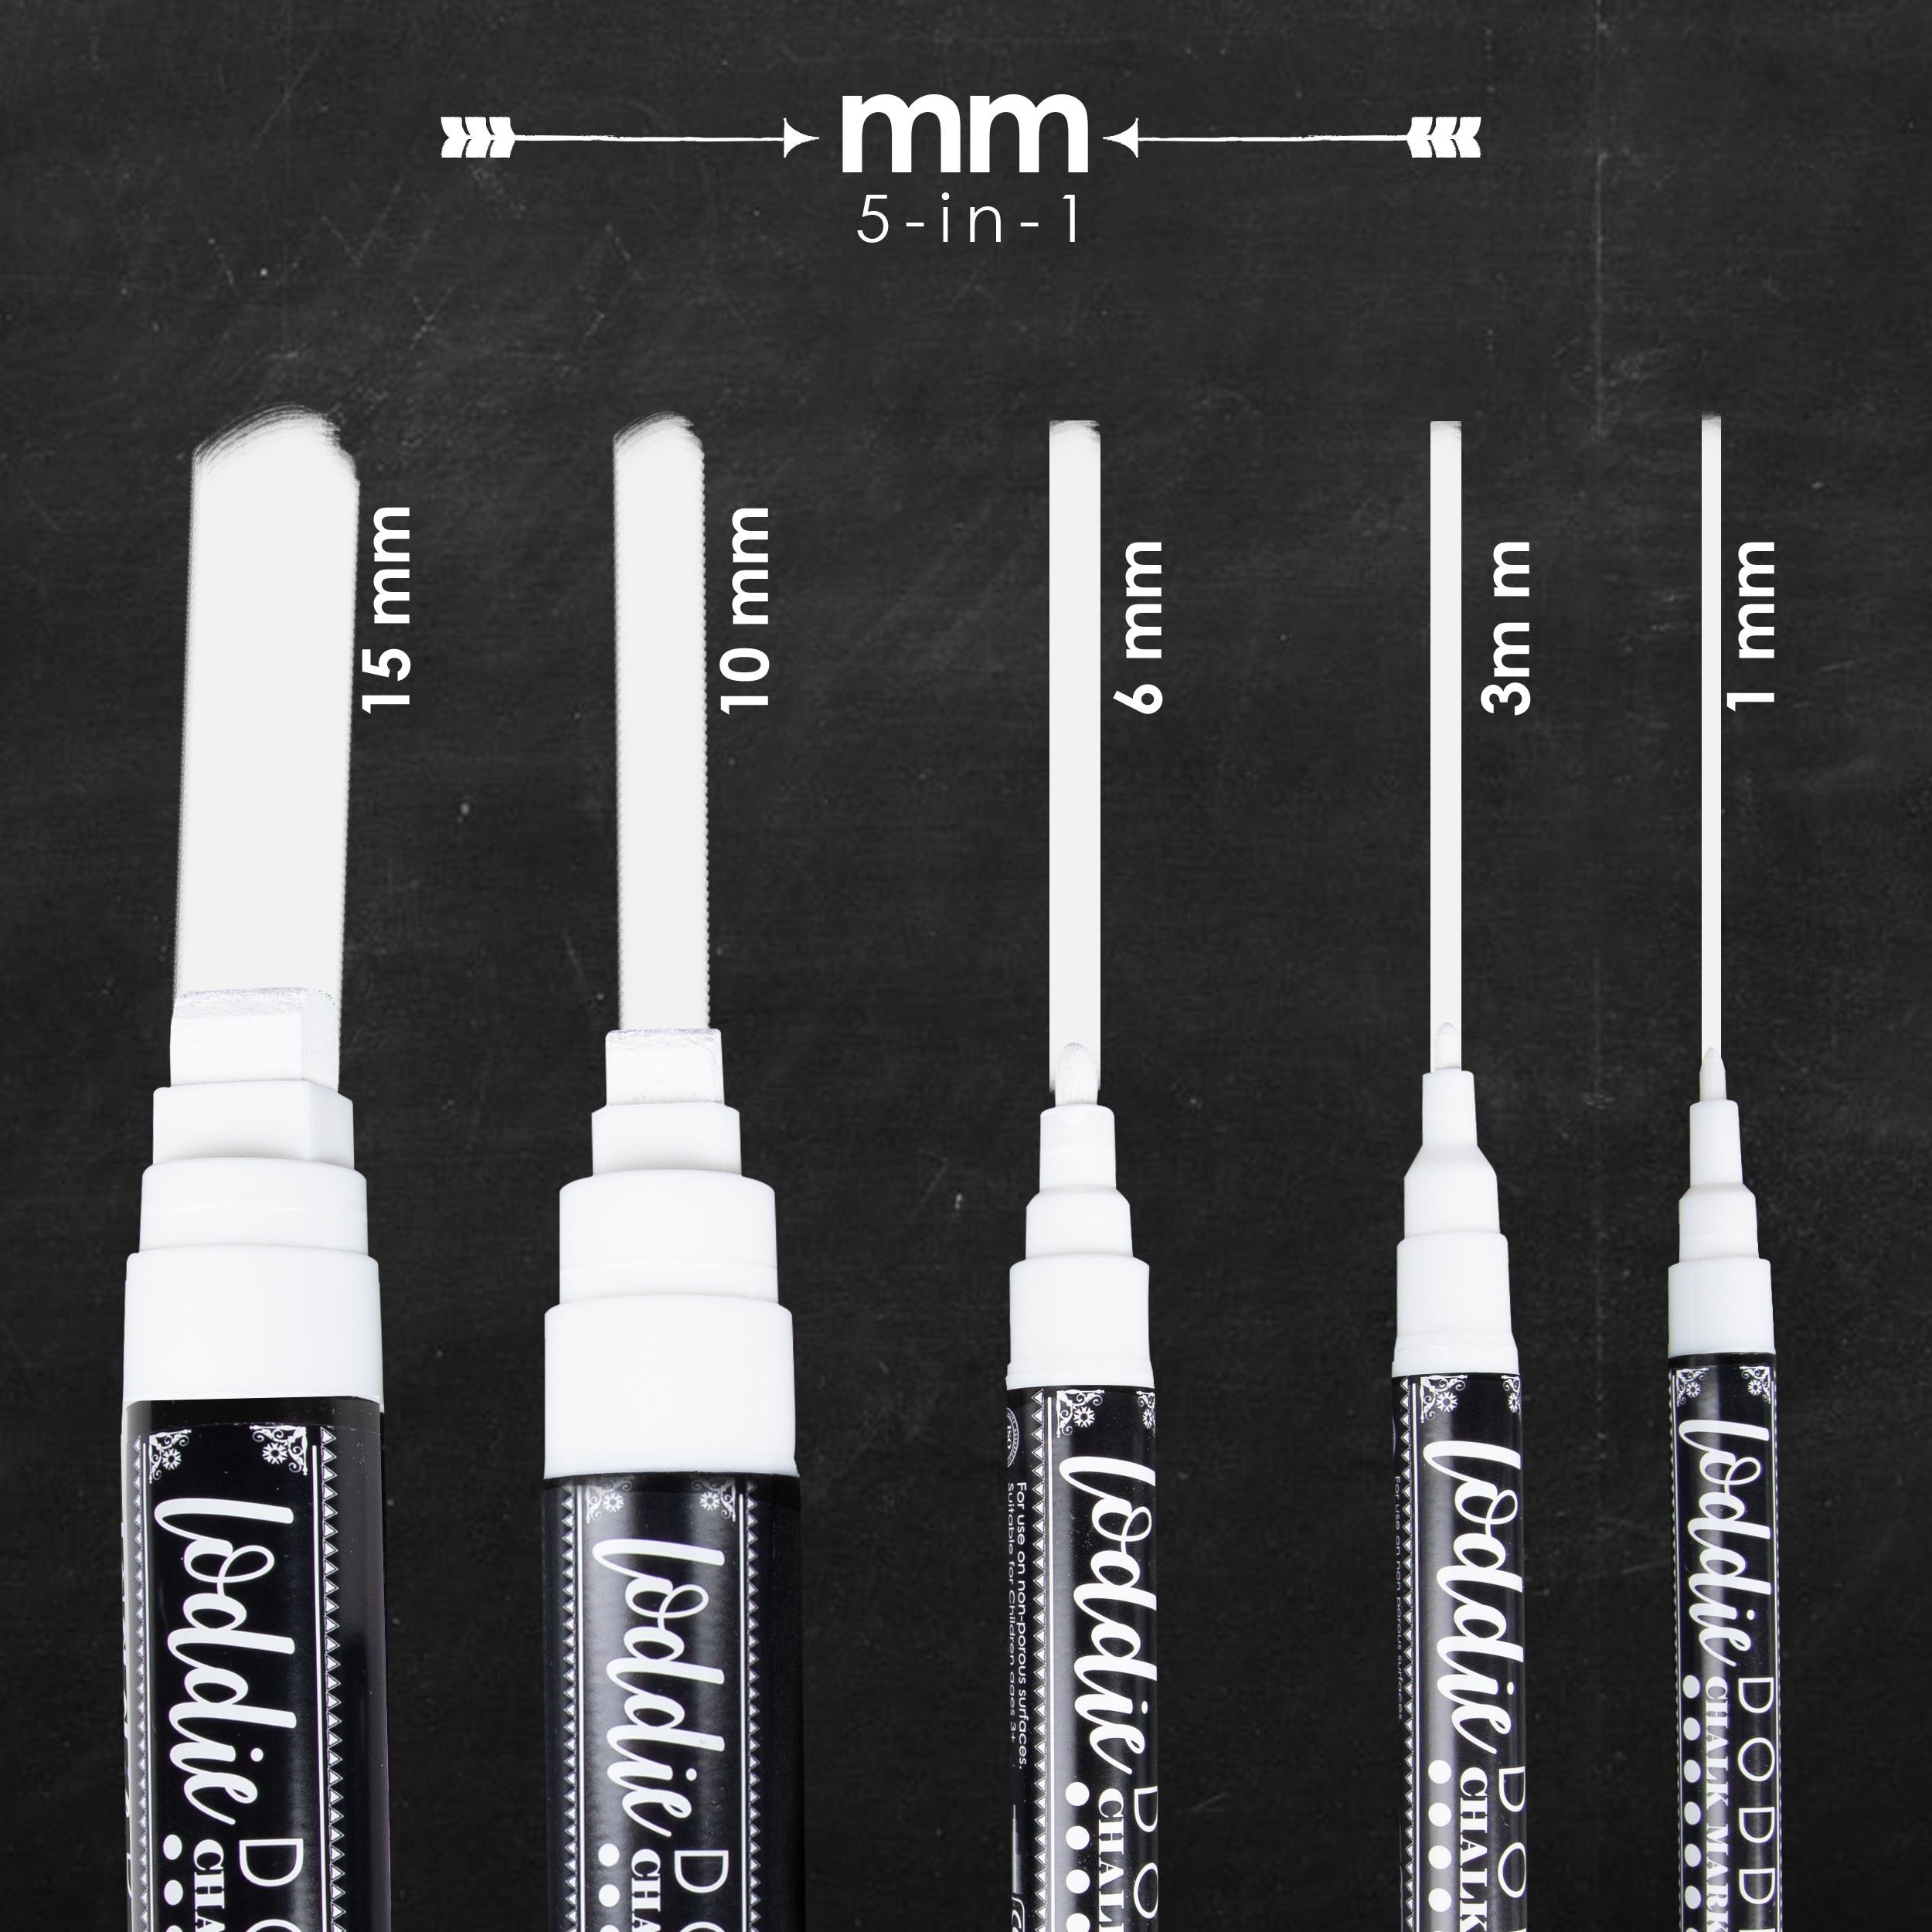 5ct Multi-Size Tips Chalk Markers - Bright White – LoddieDoddie